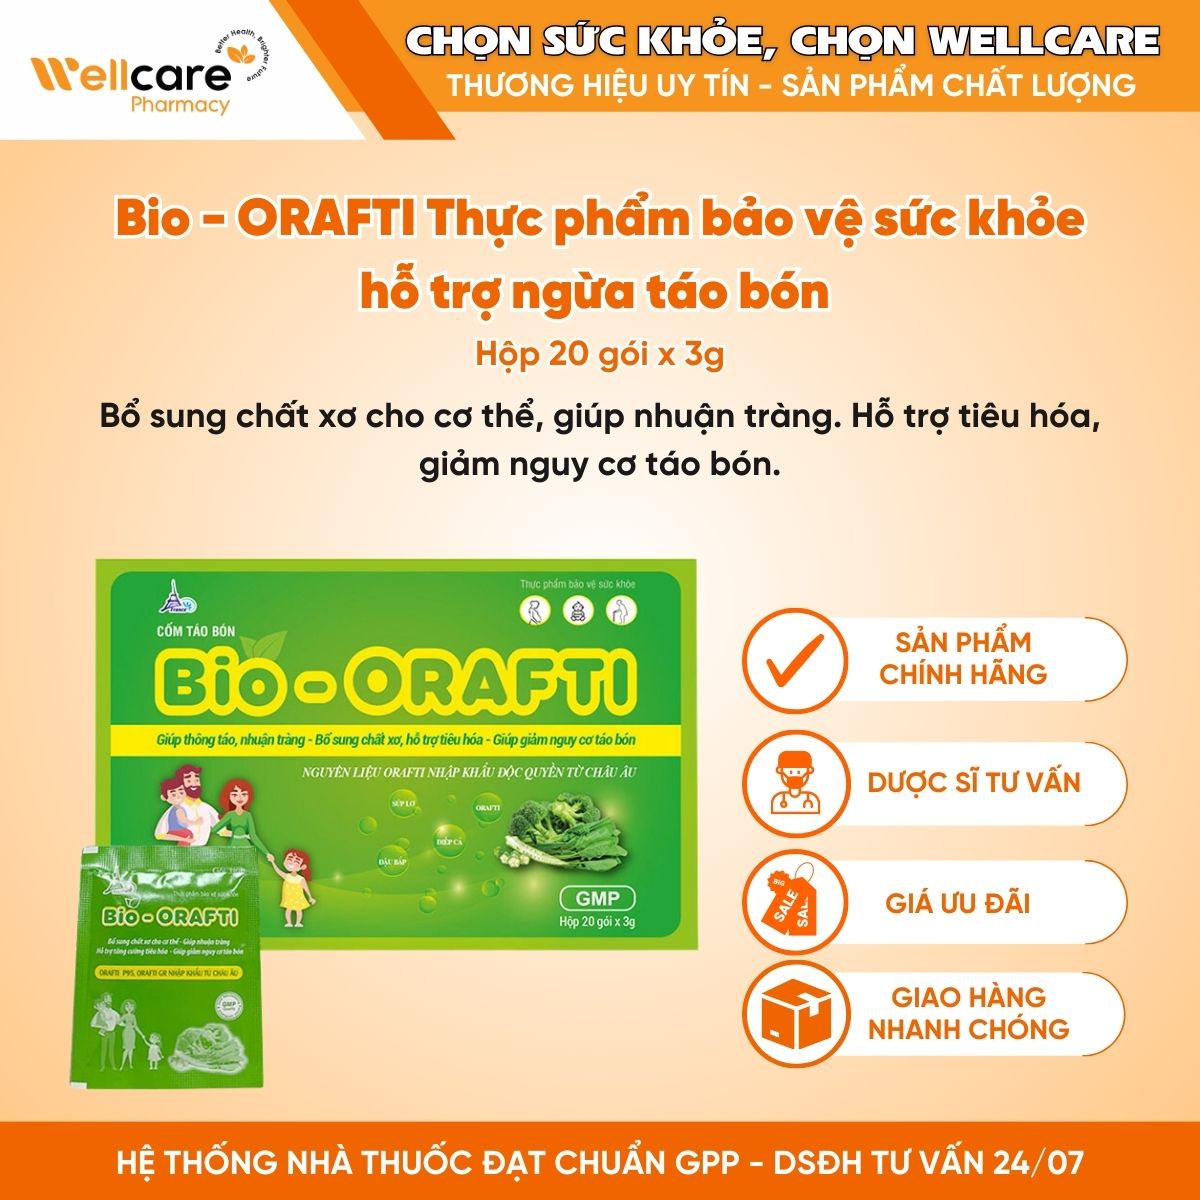 Bio – ORAFTI Thực phẩm bảo vệ sức khỏe hỗ trợ ngừa táo bón (Hộp 20 gói x 3g)